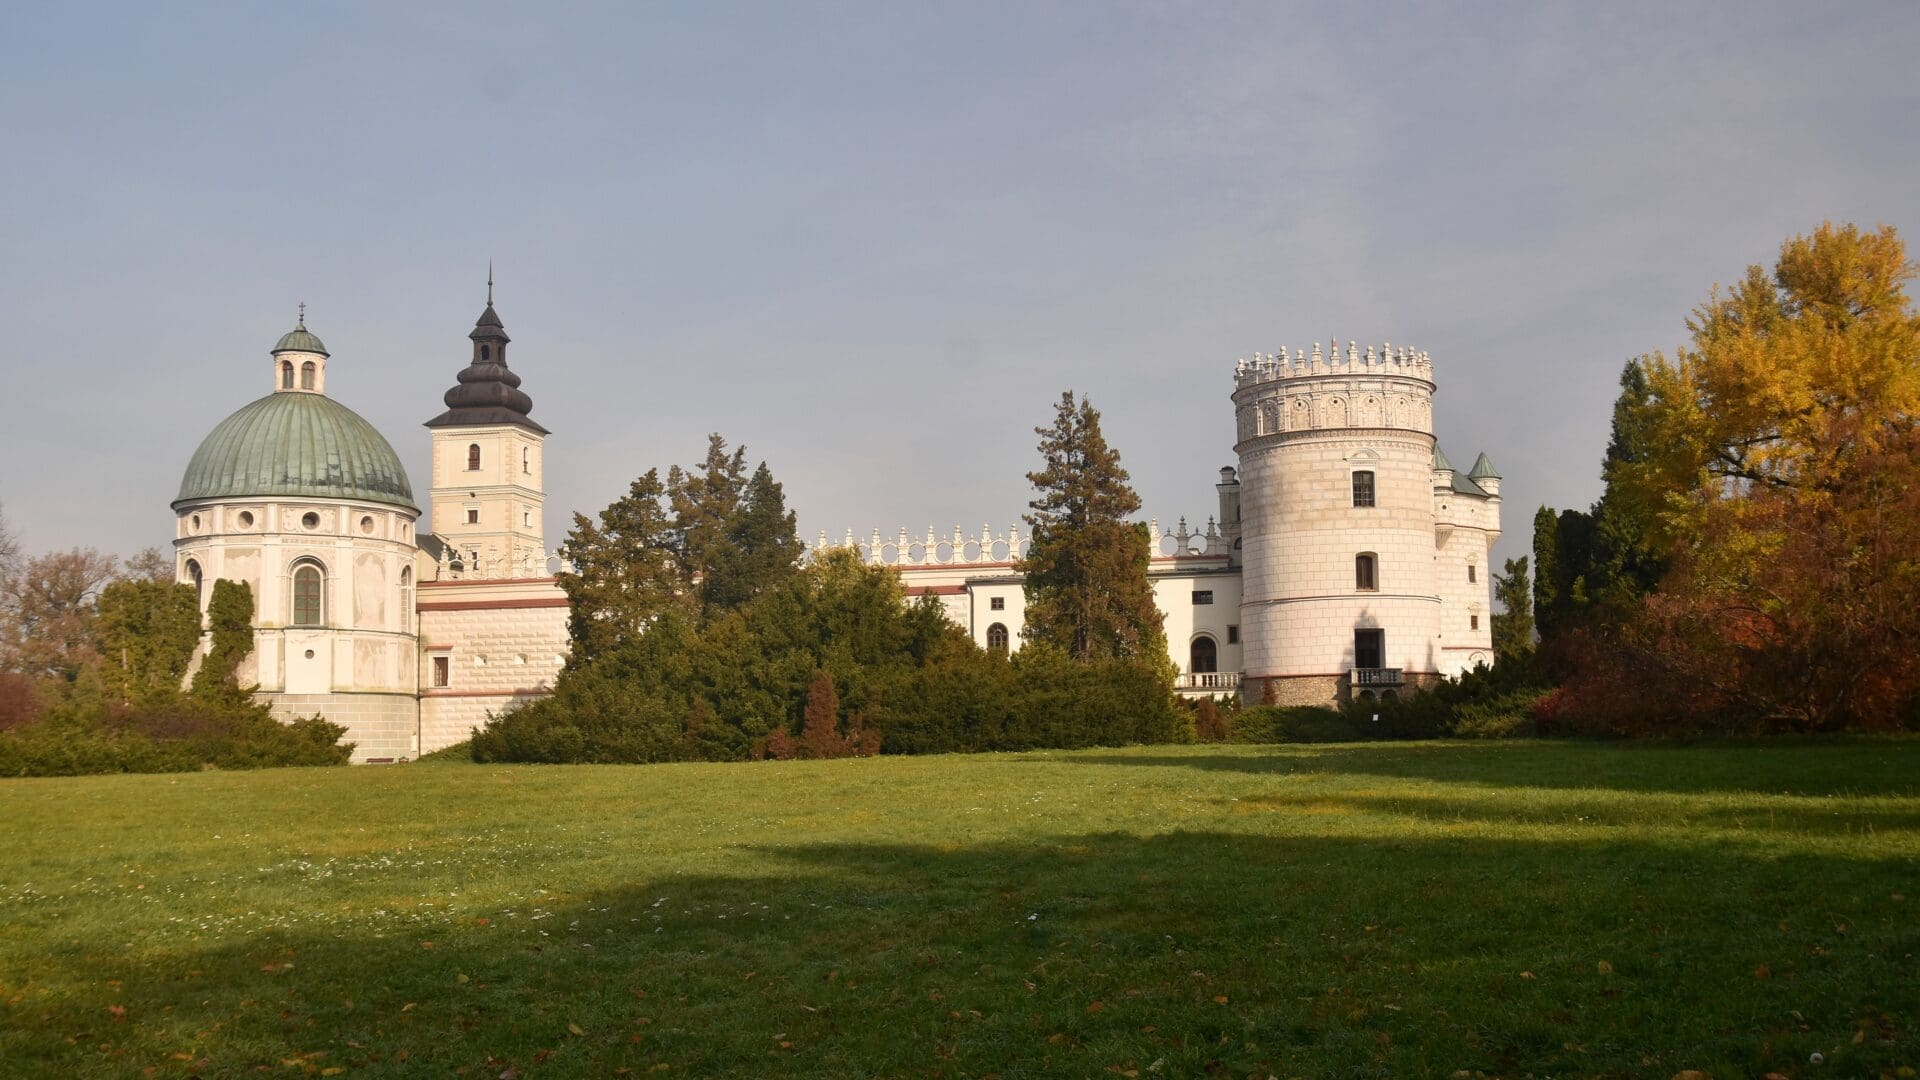 The Krasiczyn Castle in Poland.